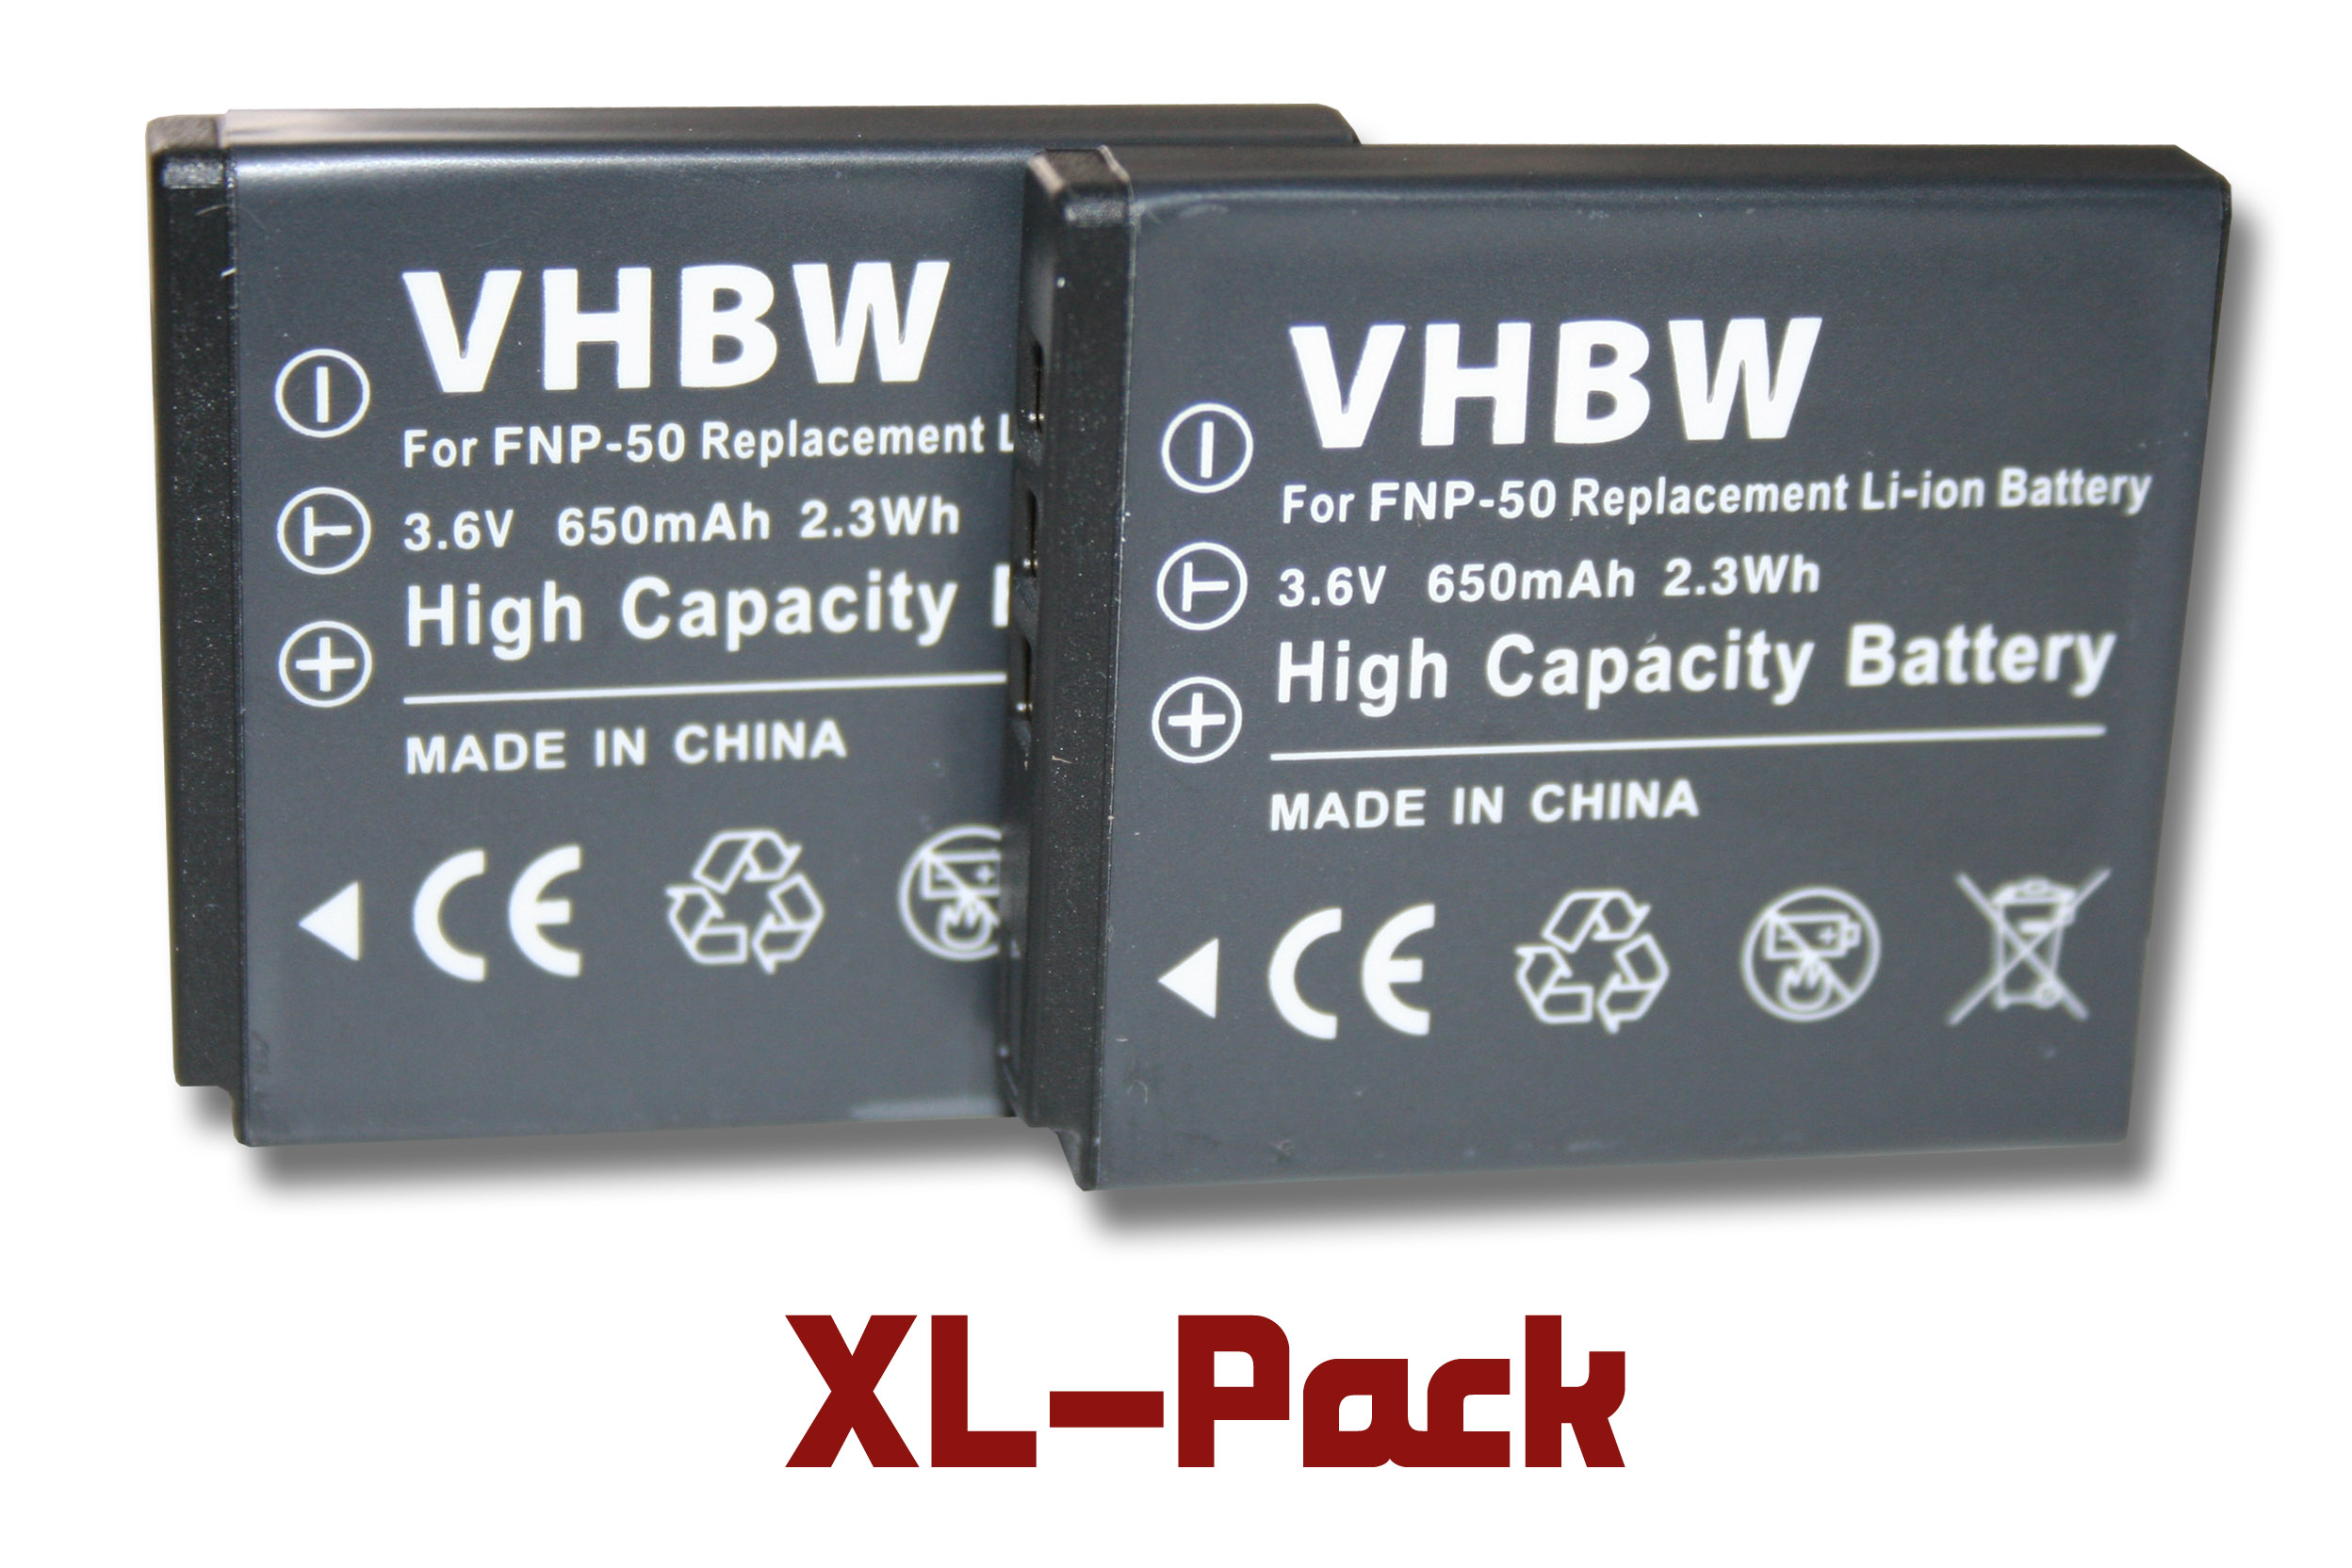 VHBW kompatibel mit Li-Ion 86934, Life Akku X44038, 3.6 - 650 86938 MD Medion MD Kamera, P44034, Volt